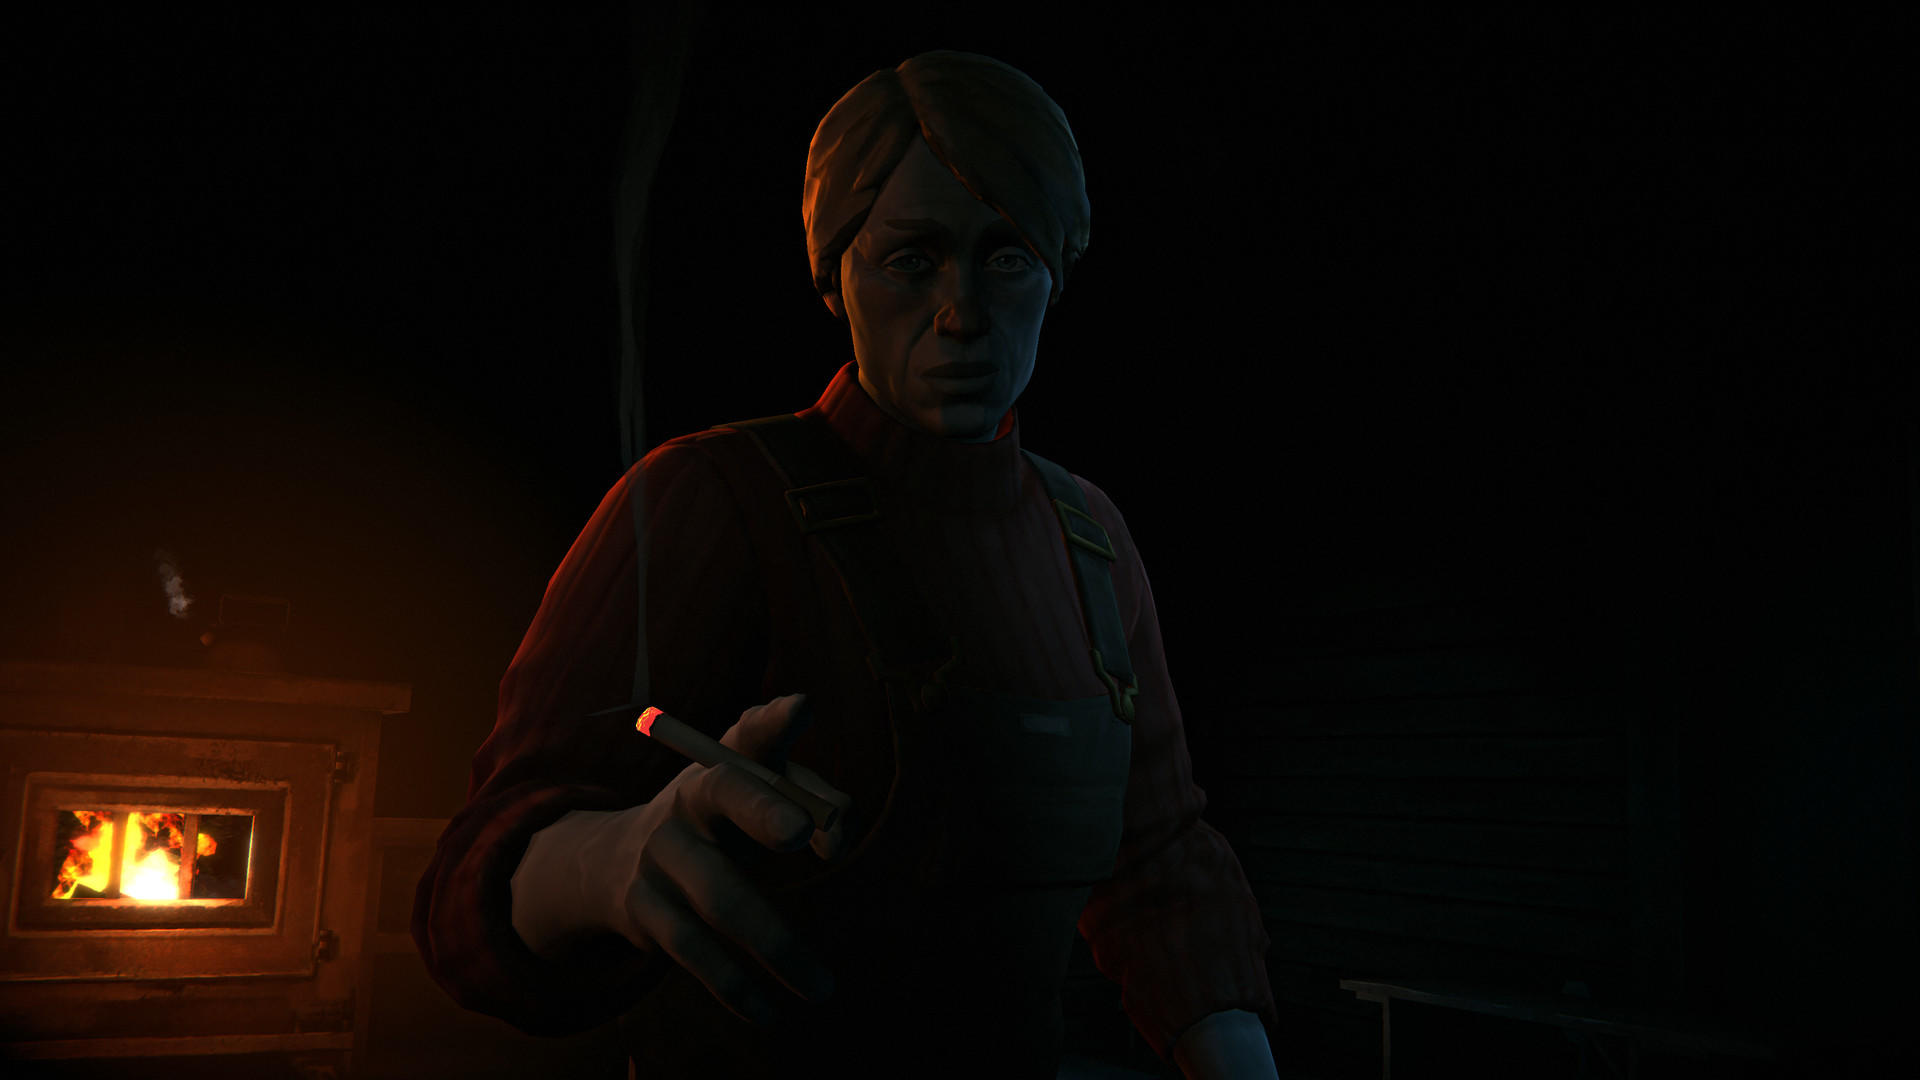 Screenshot of The Long Dark